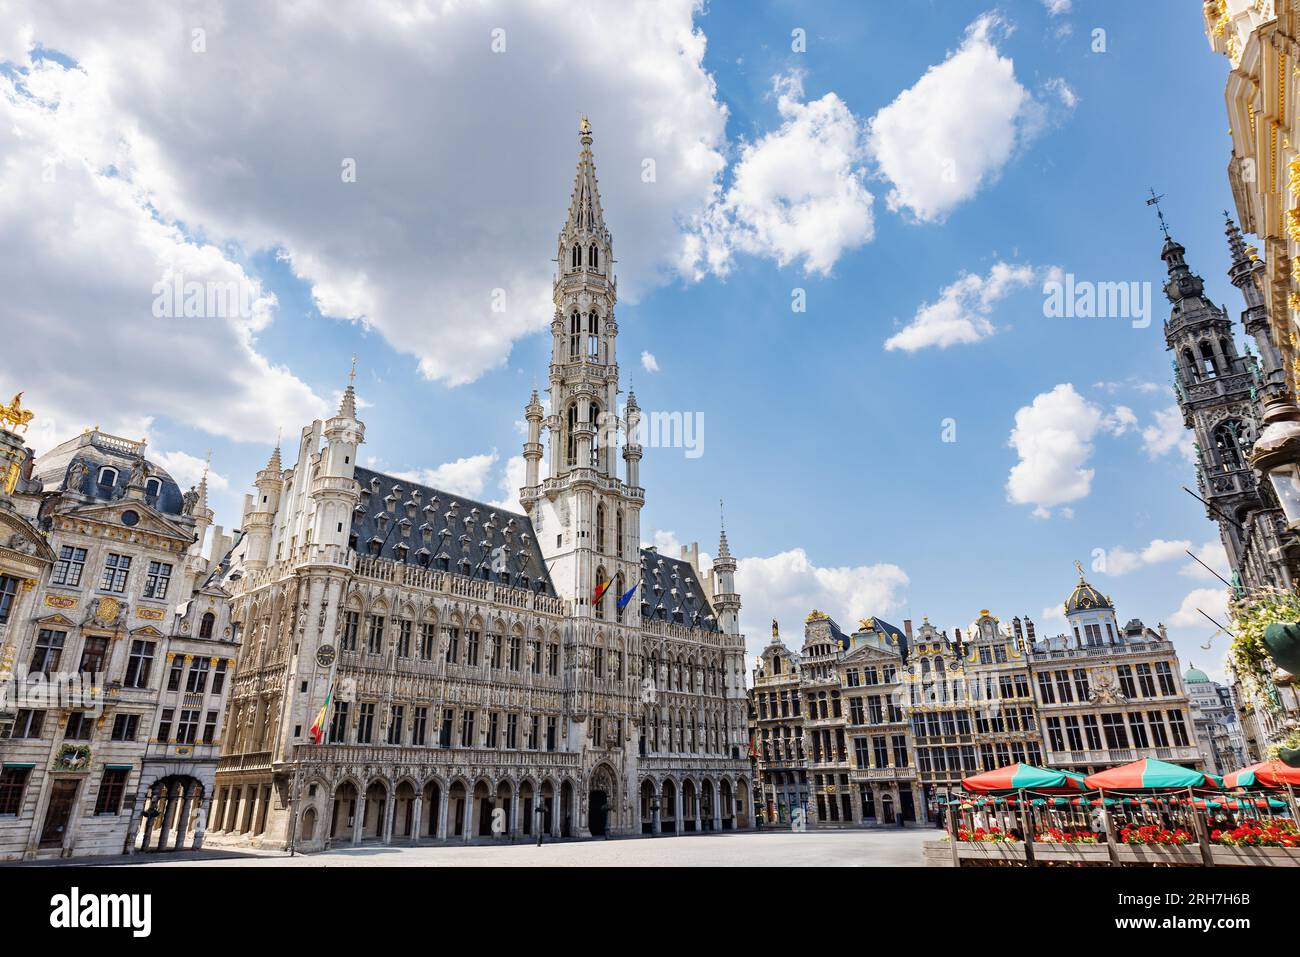 Der Grand Place, Grand Square oder Grote Markt, Big Market, der zentrale Platz von Brüssel, Belgien, ist von opulenten barocken Guildhallen des umgeben Stockfoto